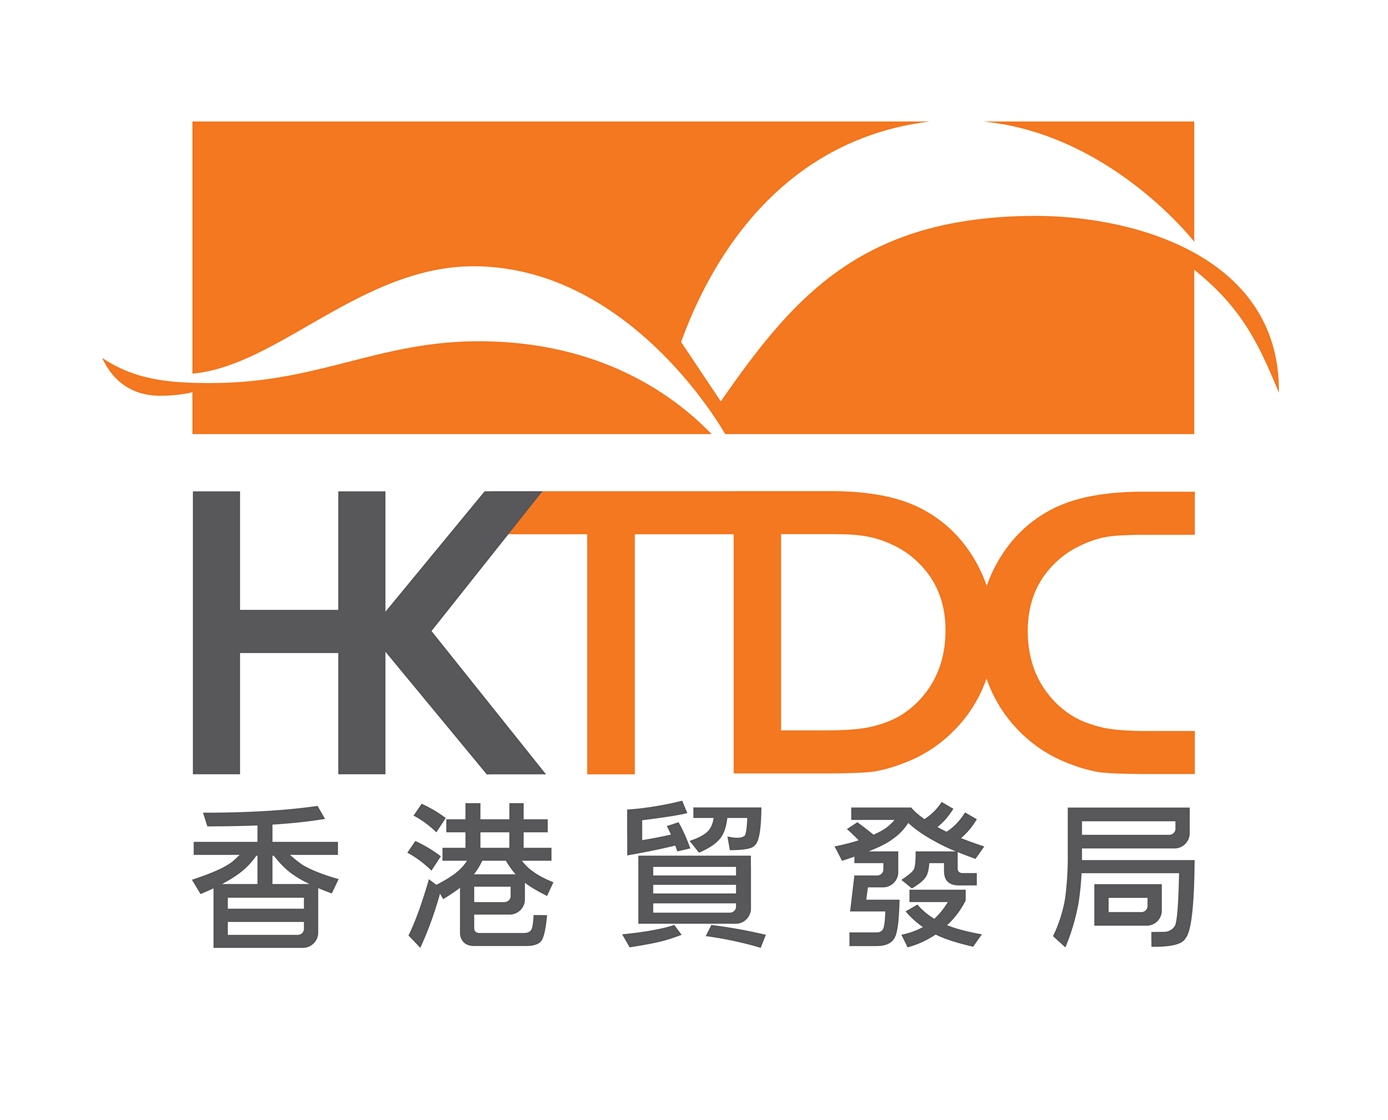 香港贸易发展局